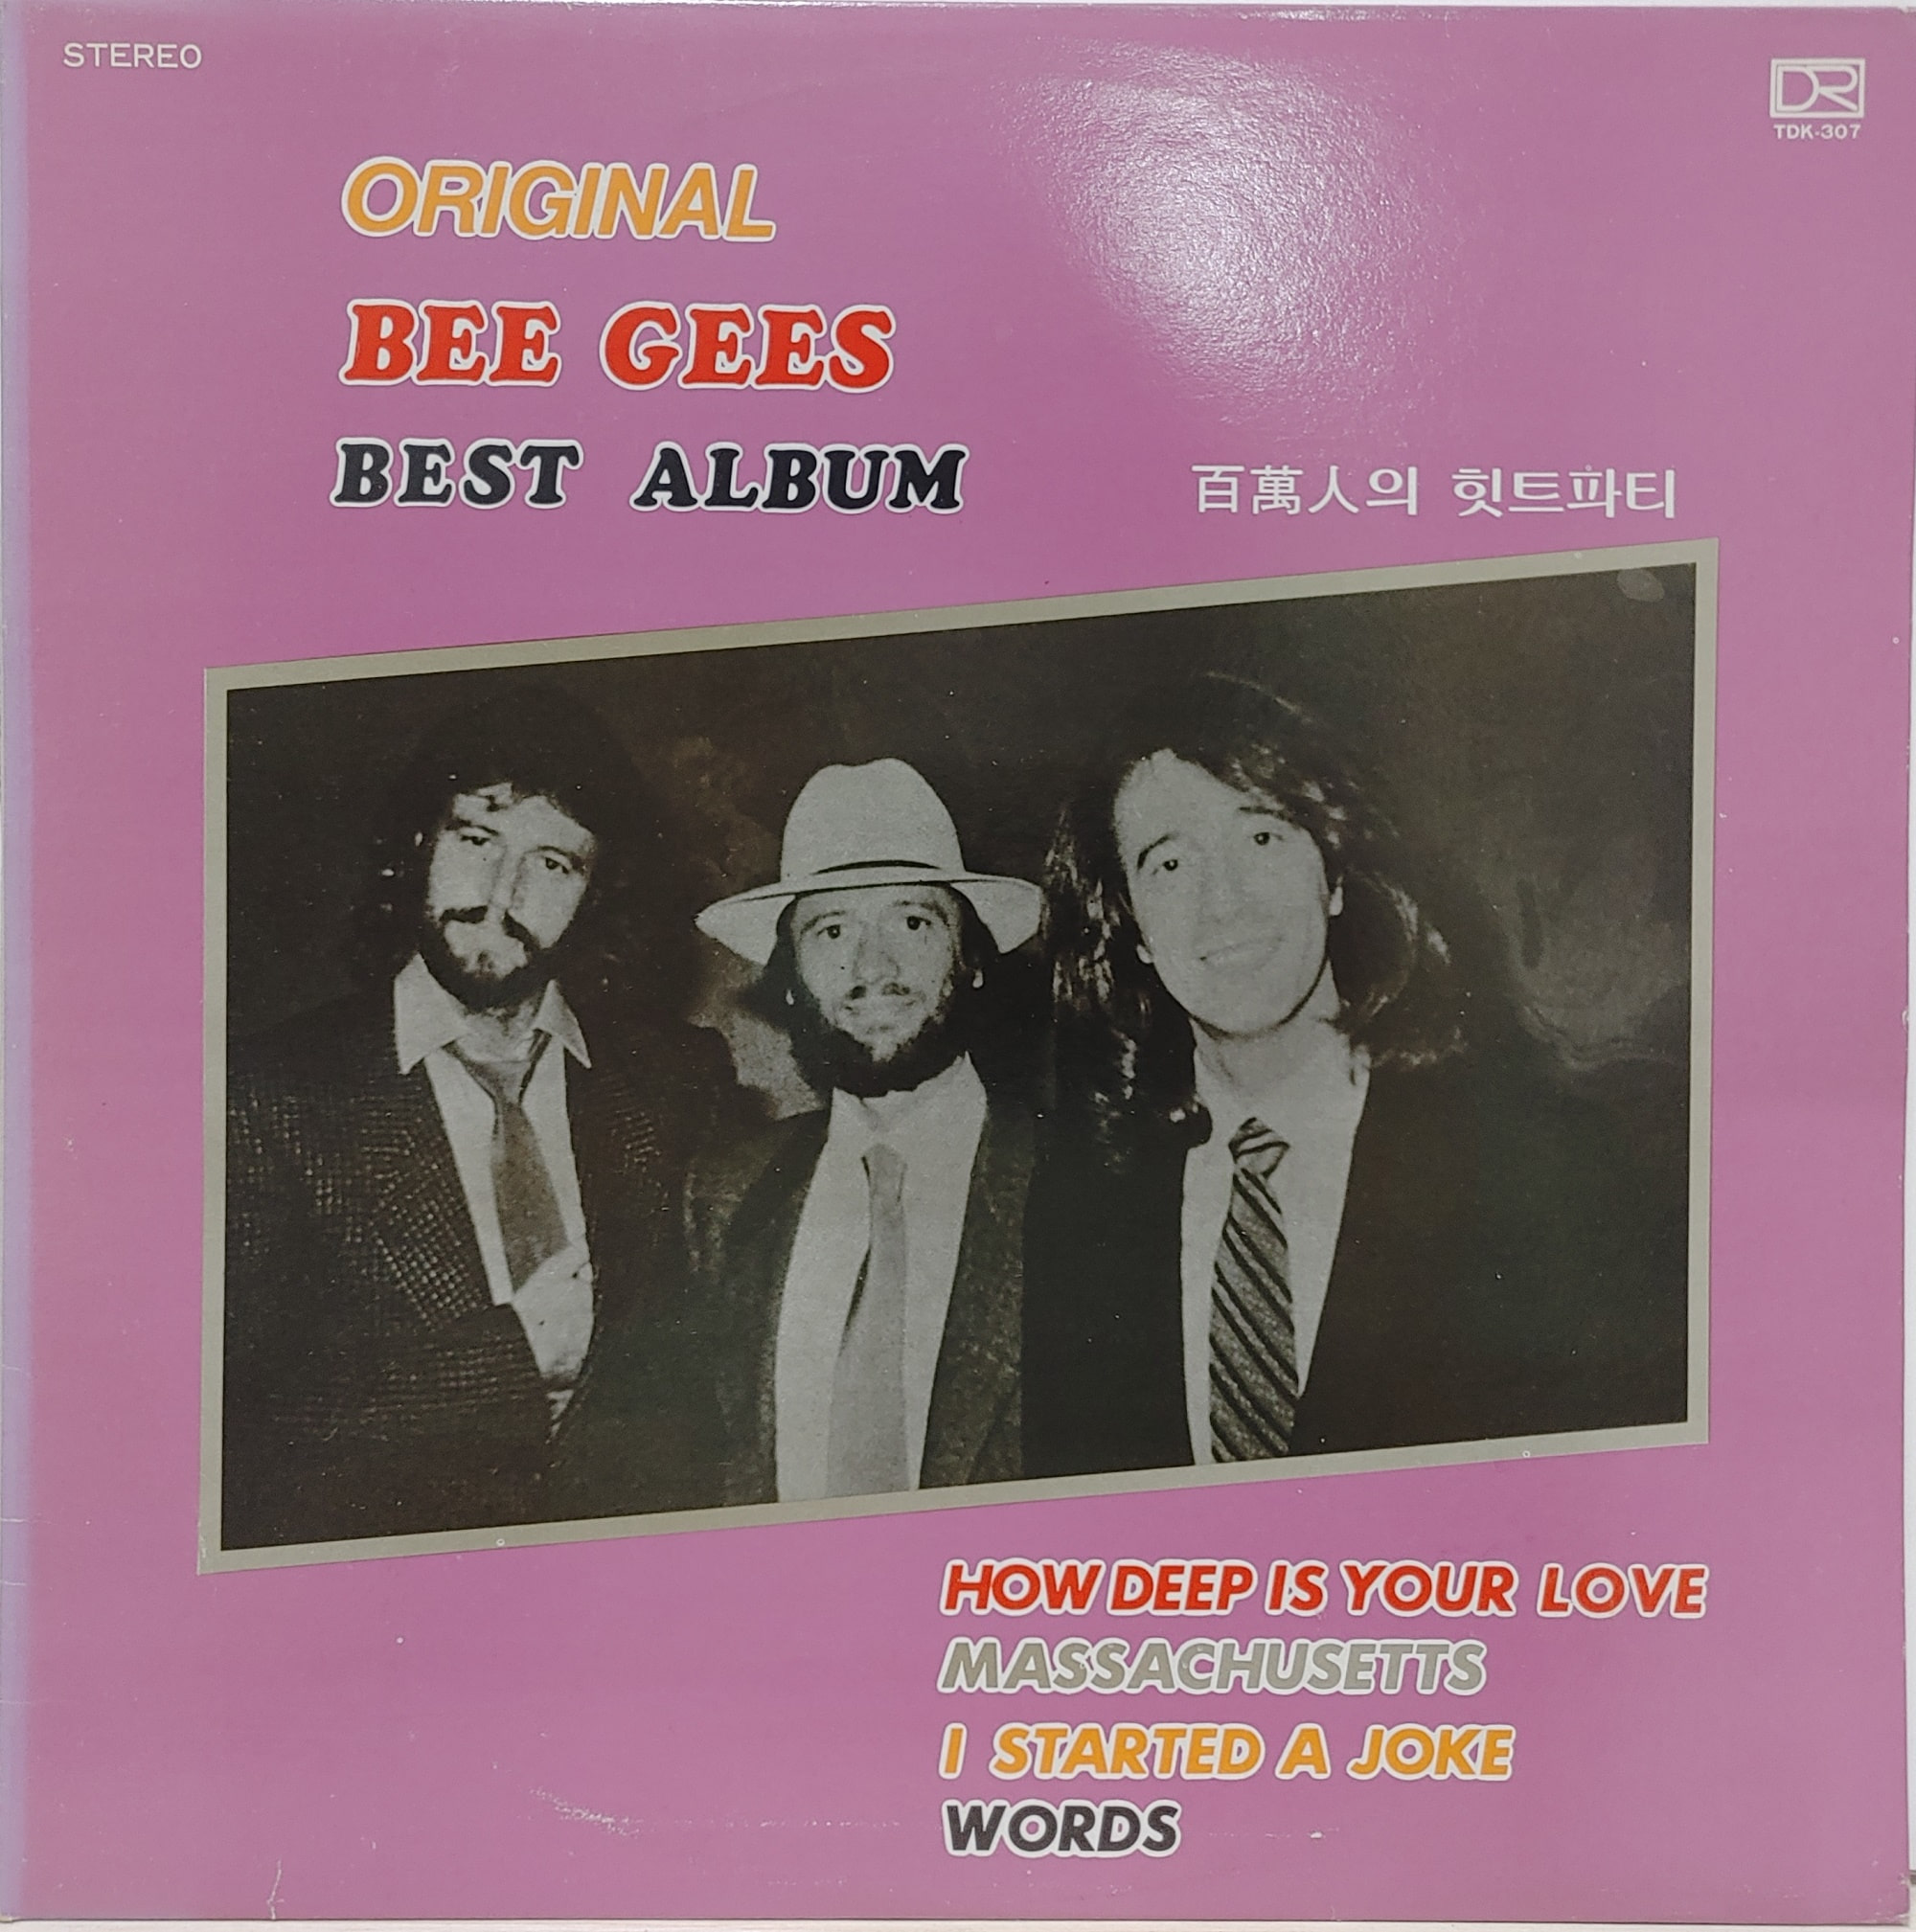 ORIGINAL BEE GEES BEST ALBUM